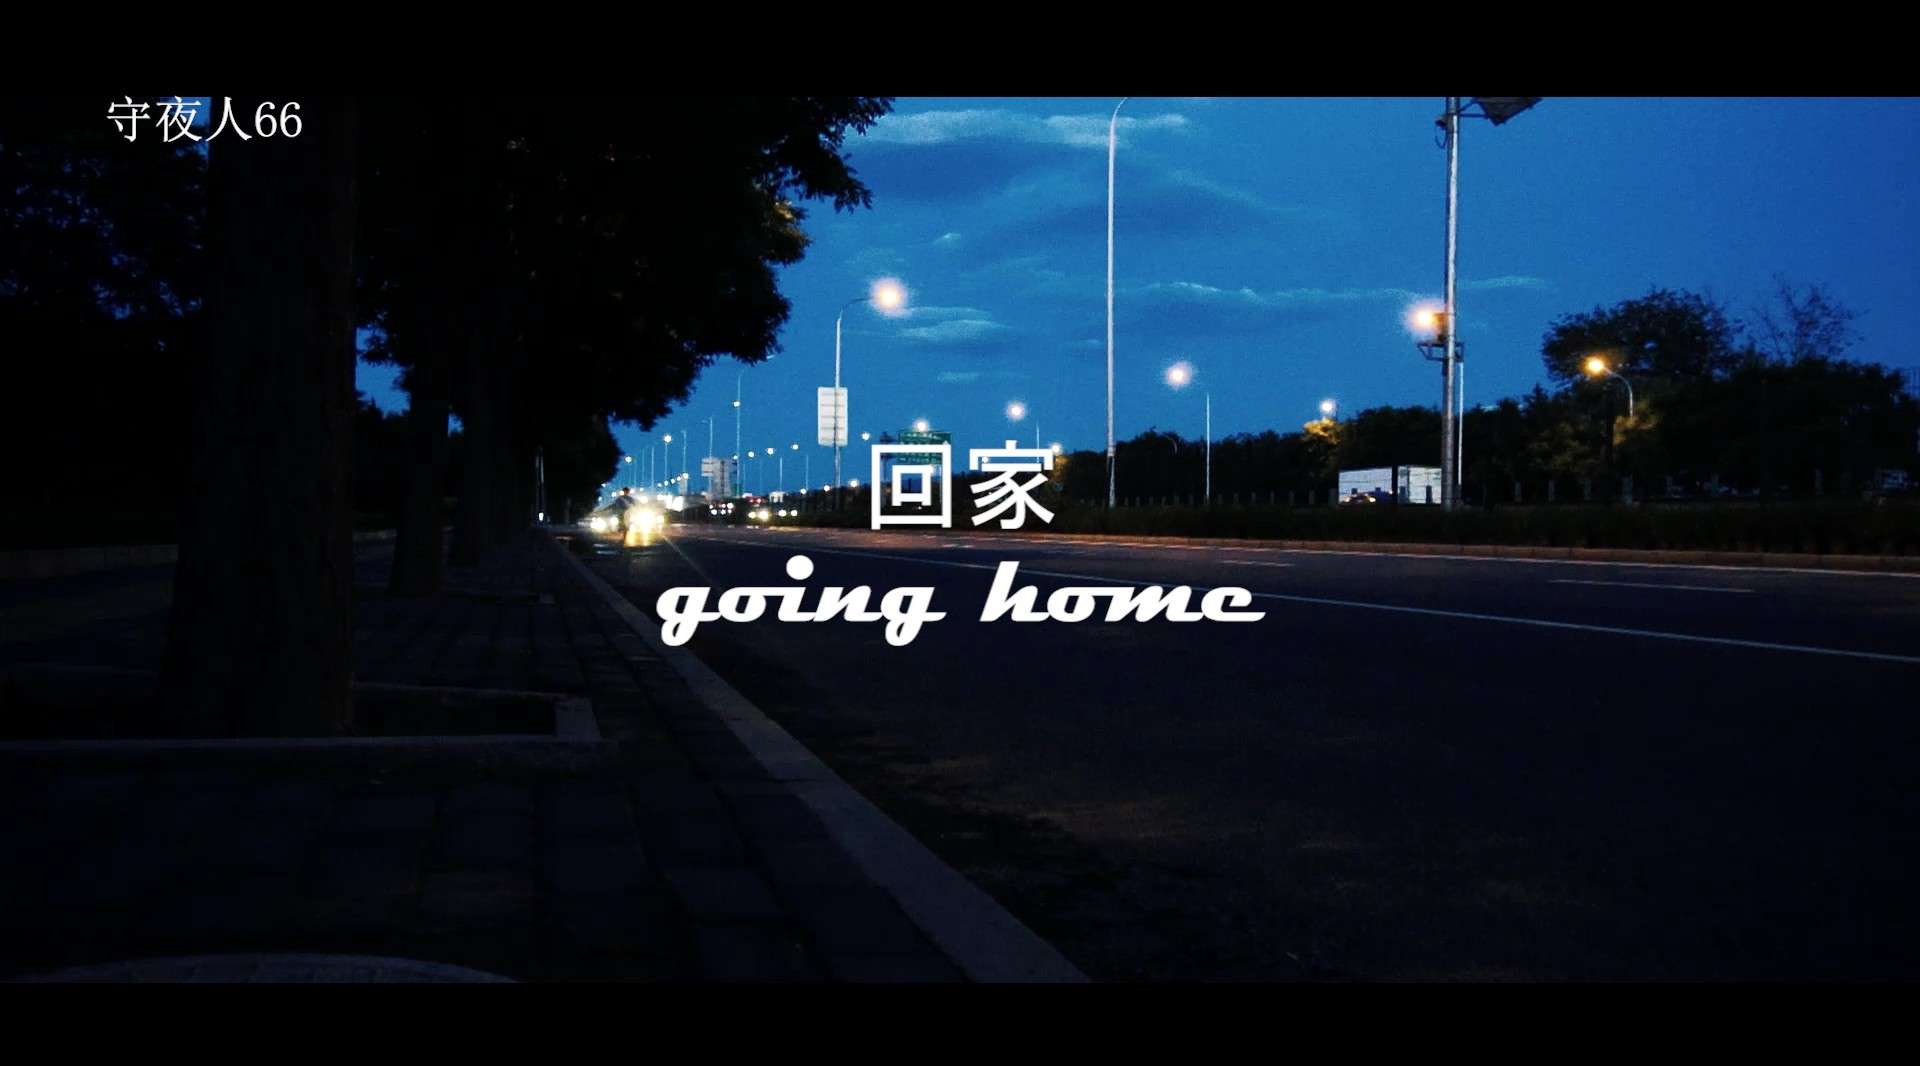 回家-going home